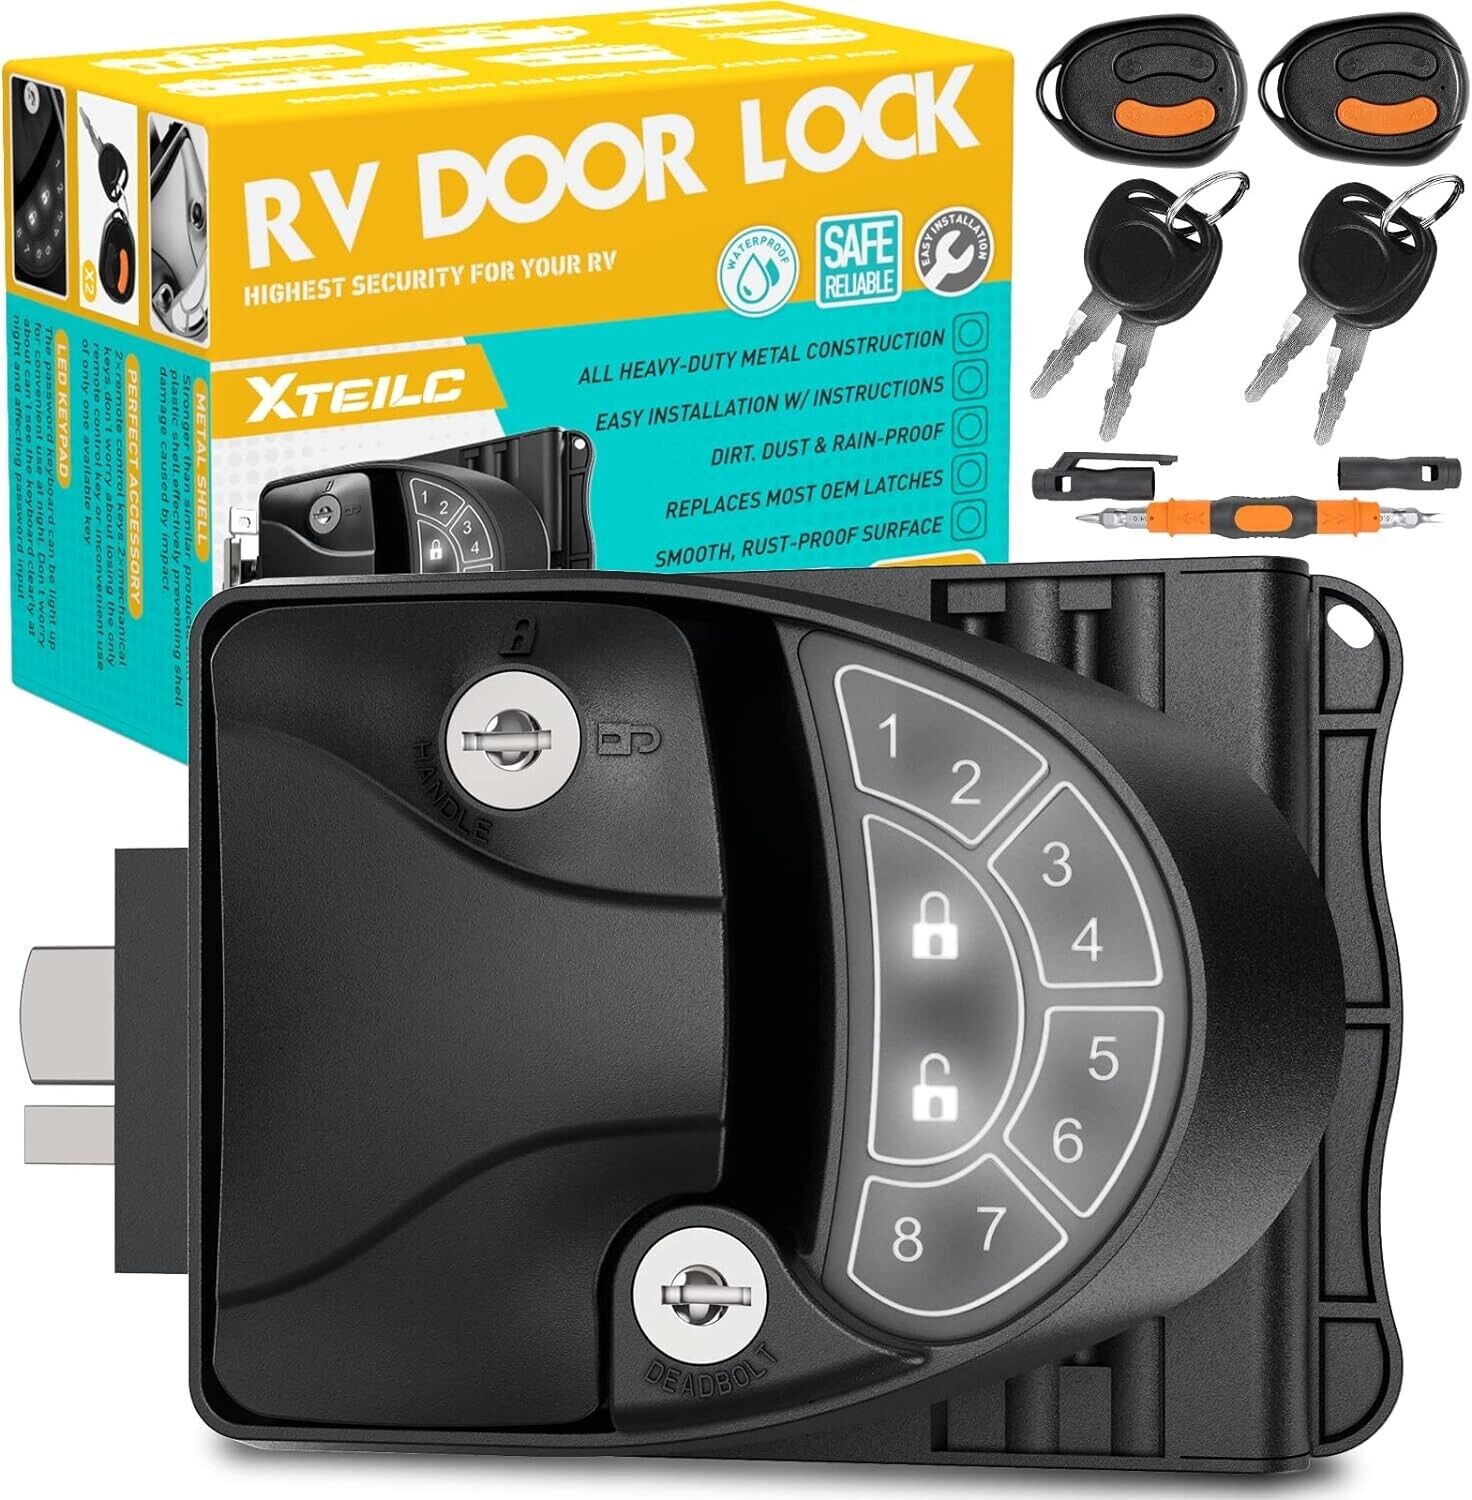 XTEILC RV Keyless Entry Door Lock, RV Lock, Keyless Entry RV Lock, Zinc Alloy RV